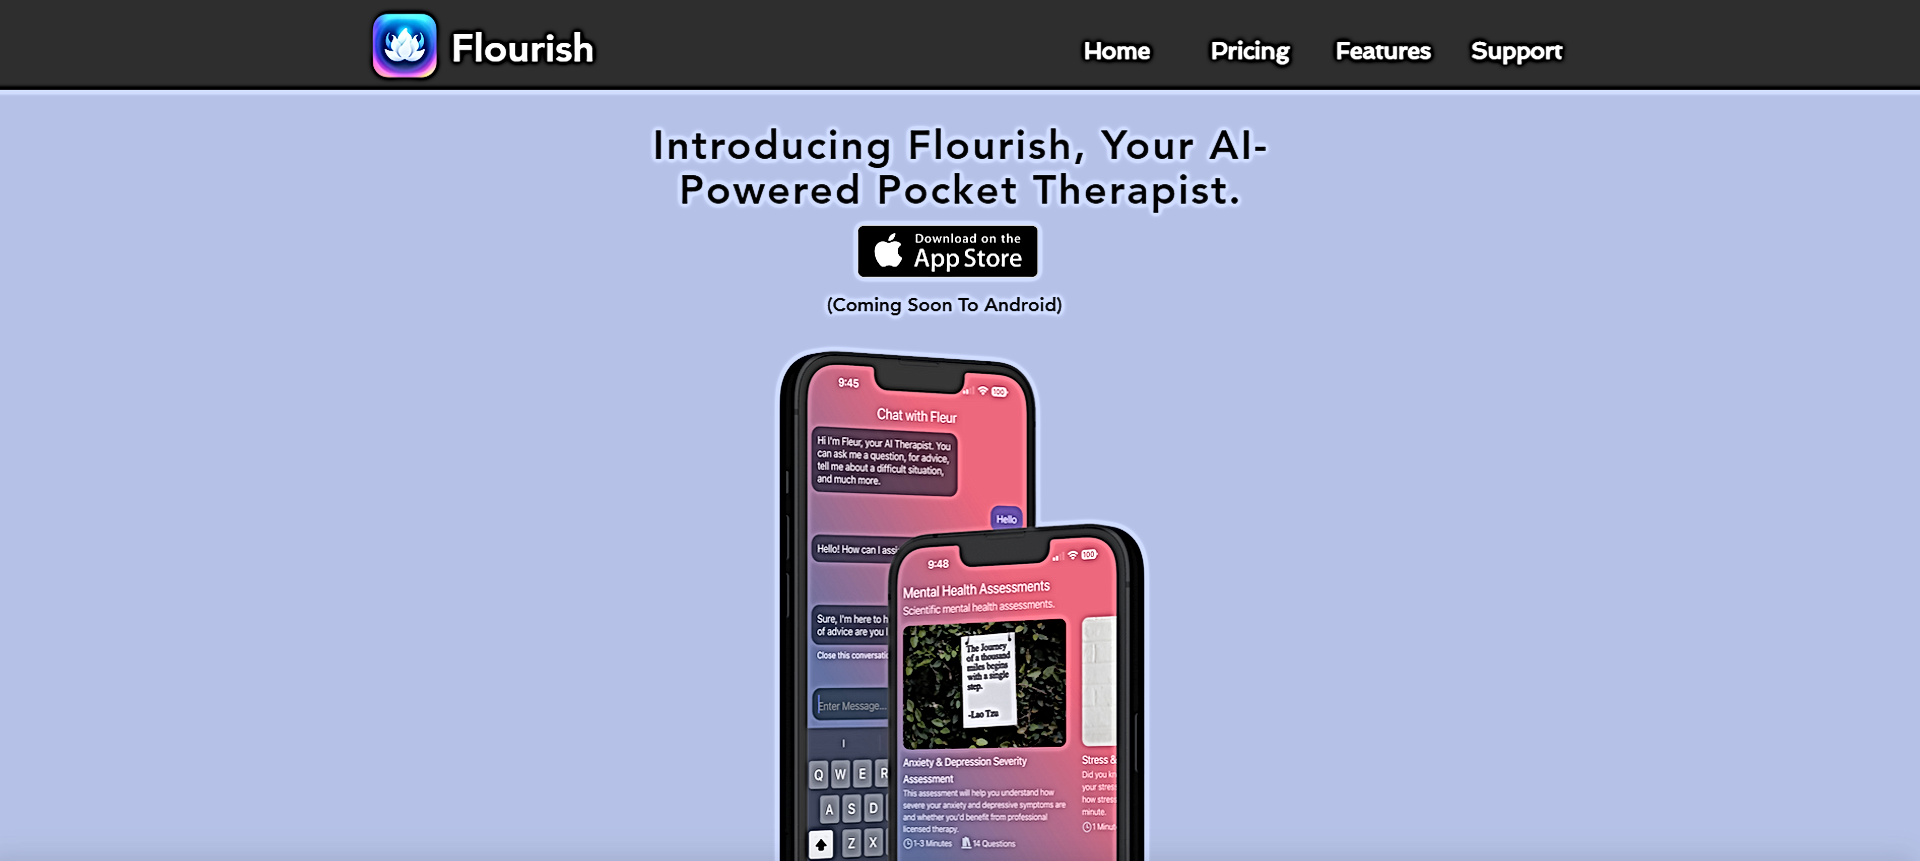 Flourish featured